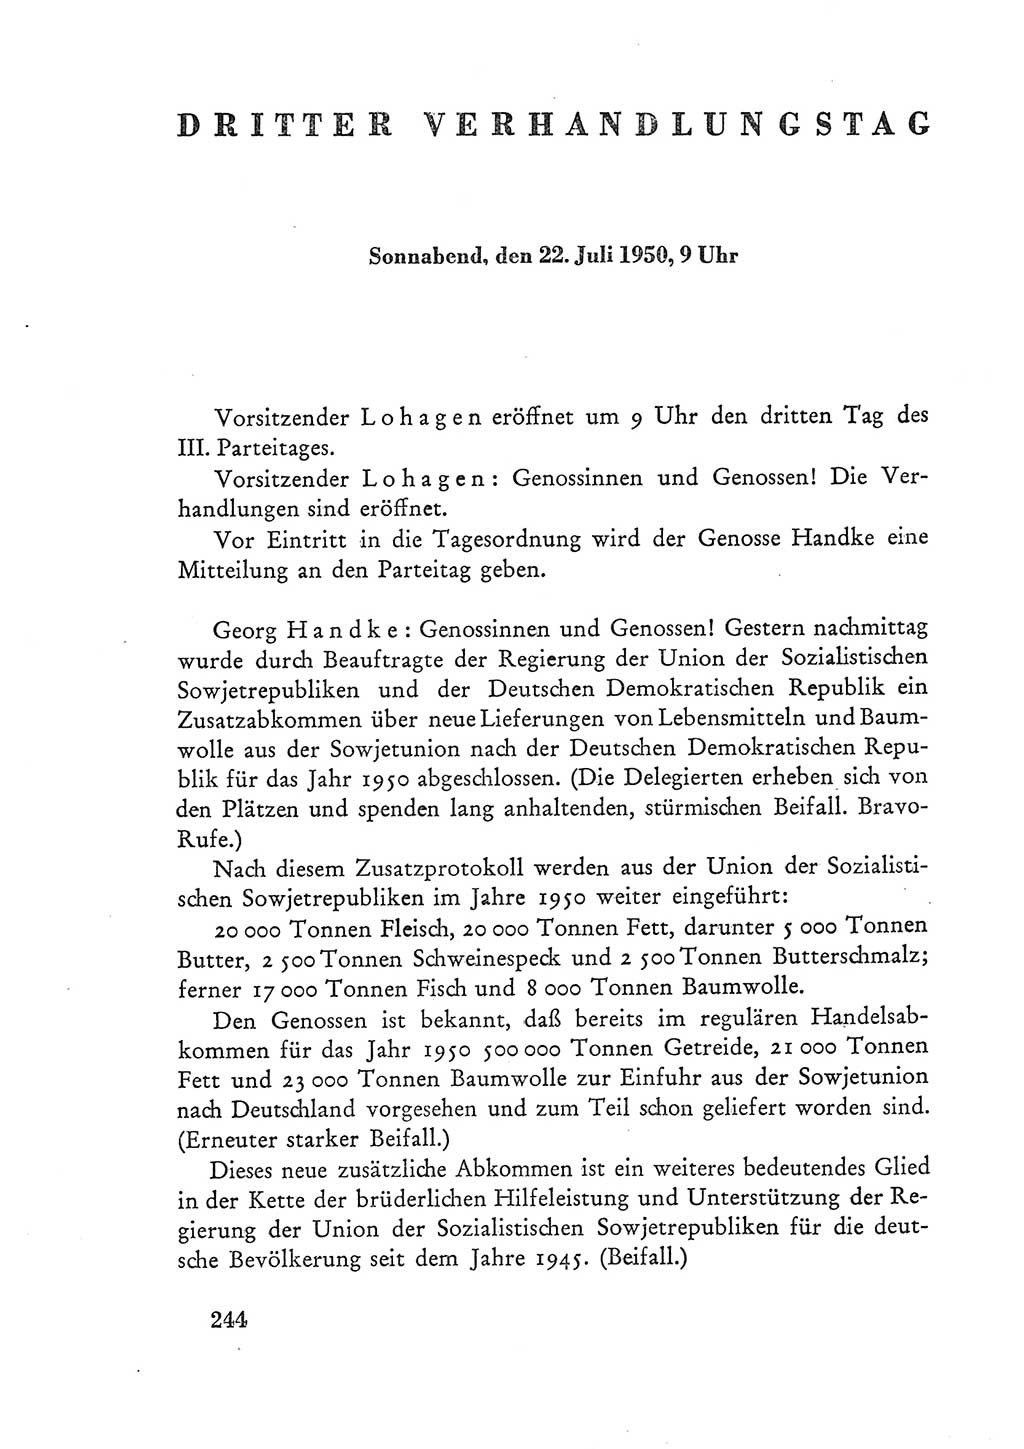 Protokoll der Verhandlungen des Ⅲ. Parteitages der Sozialistischen Einheitspartei Deutschlands (SED) [Deutsche Demokratische Republik (DDR)] 1950, Band 1, Seite 244 (Prot. Verh. Ⅲ. PT SED DDR 1950, Bd. 1, S. 244)